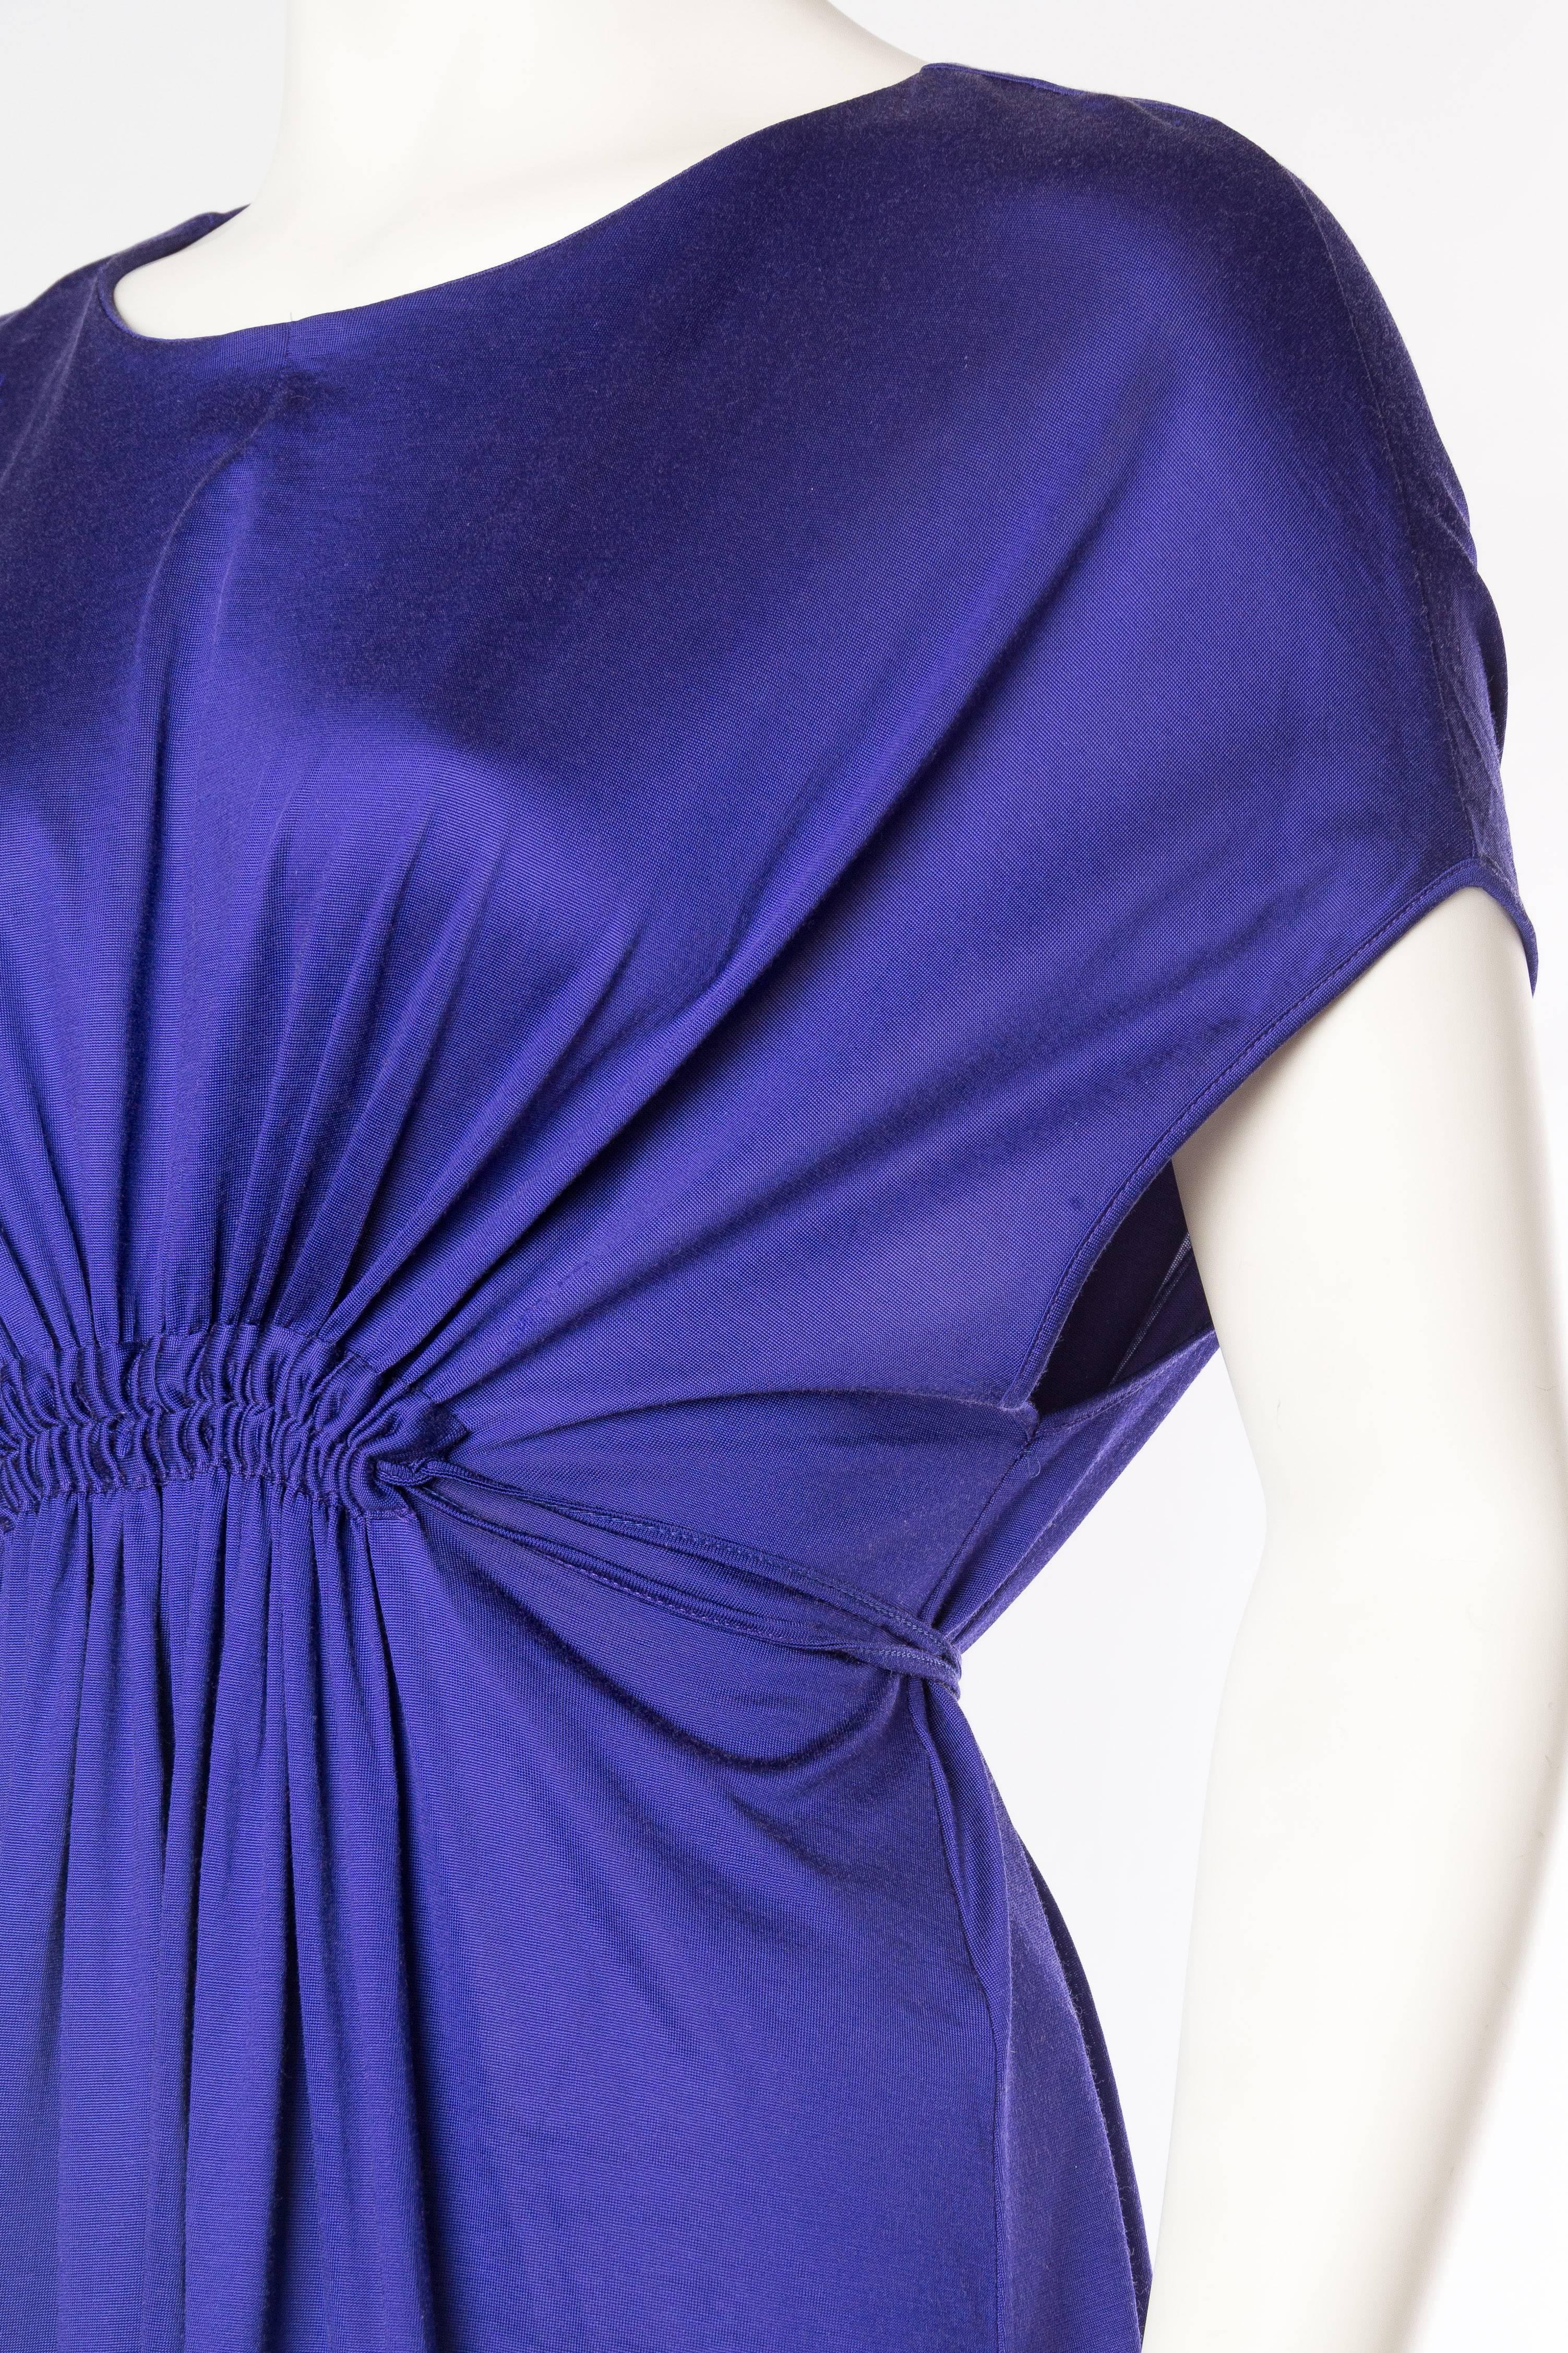 1990S JIL SANDER Sapphire Blue  Jersey Empire Waist Drawstring Dress 2